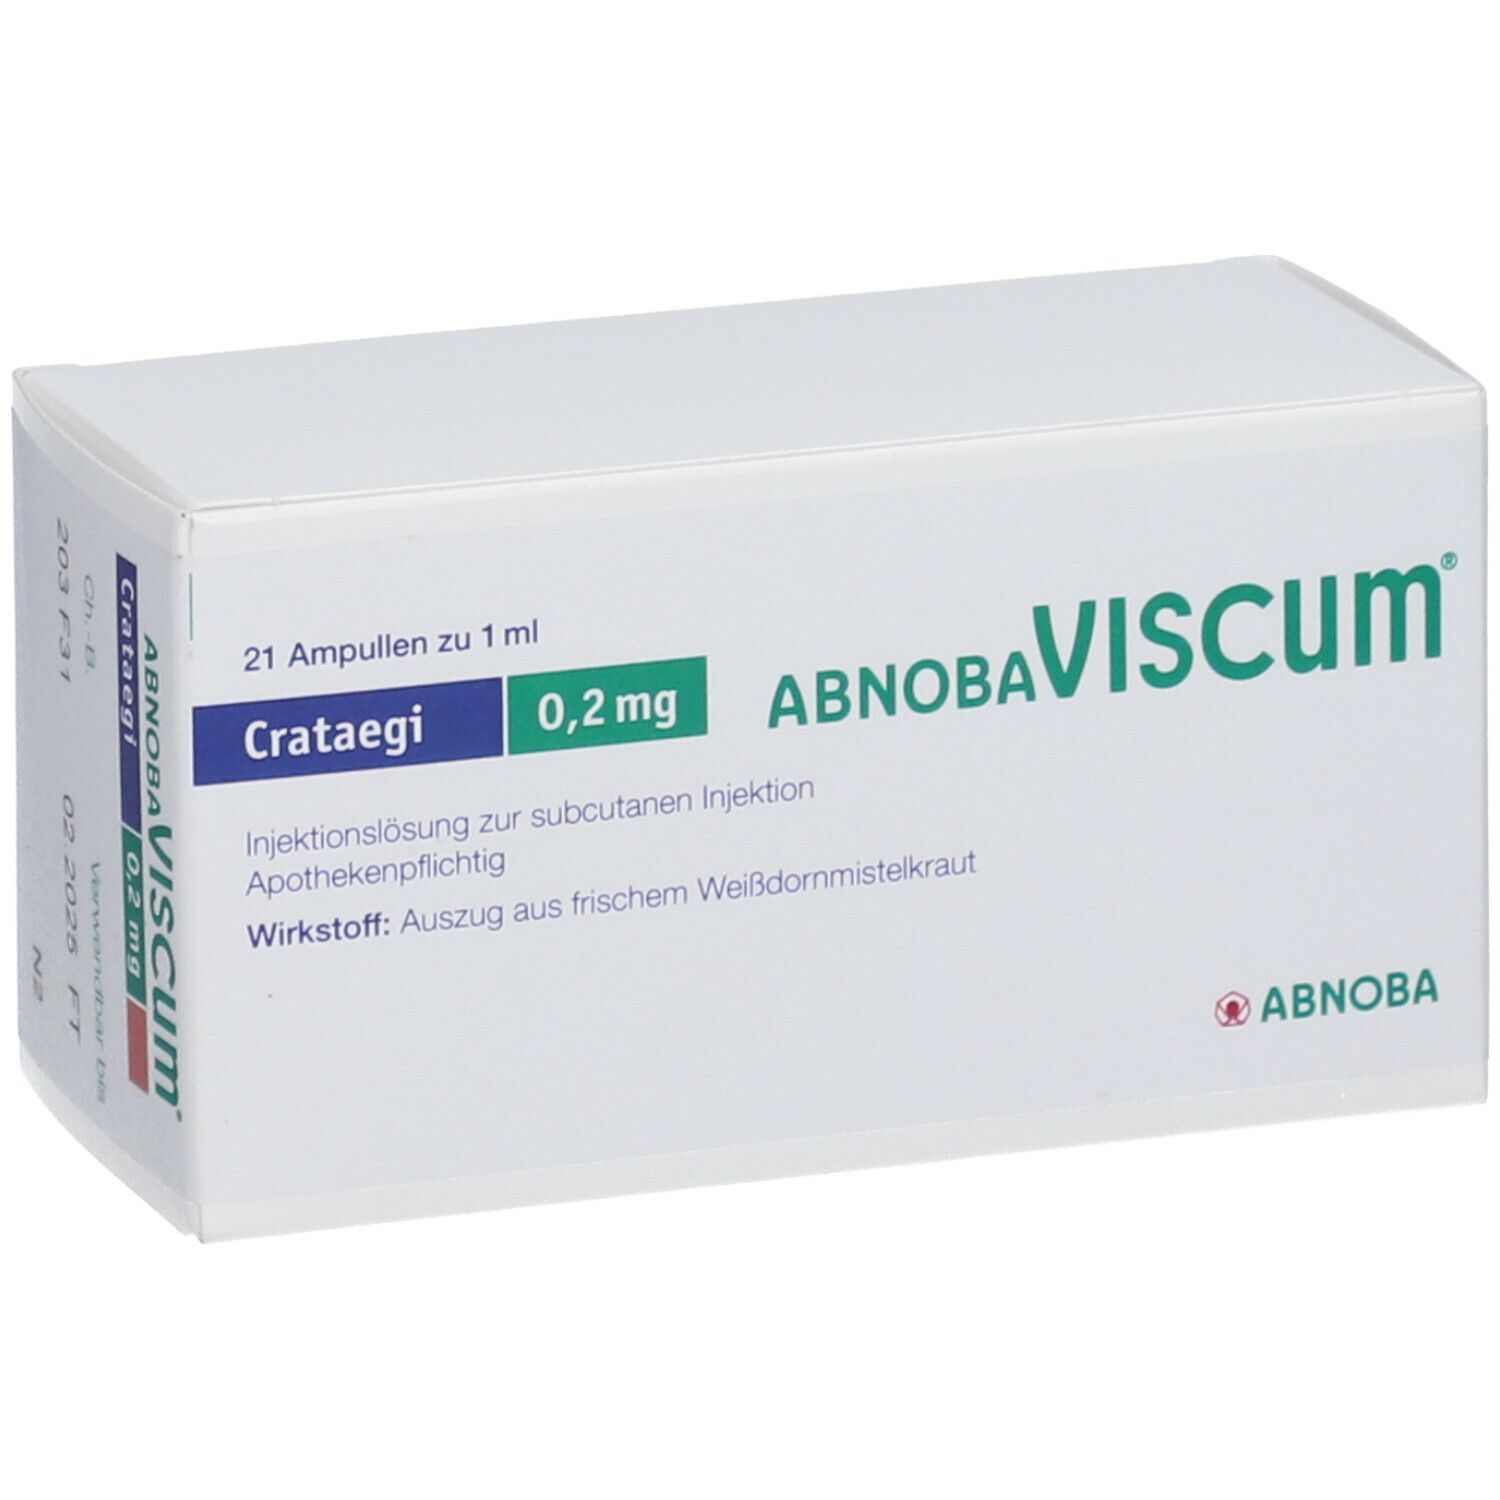 abnobaVISCUM® Crataegi 0,2 mg Ampullen